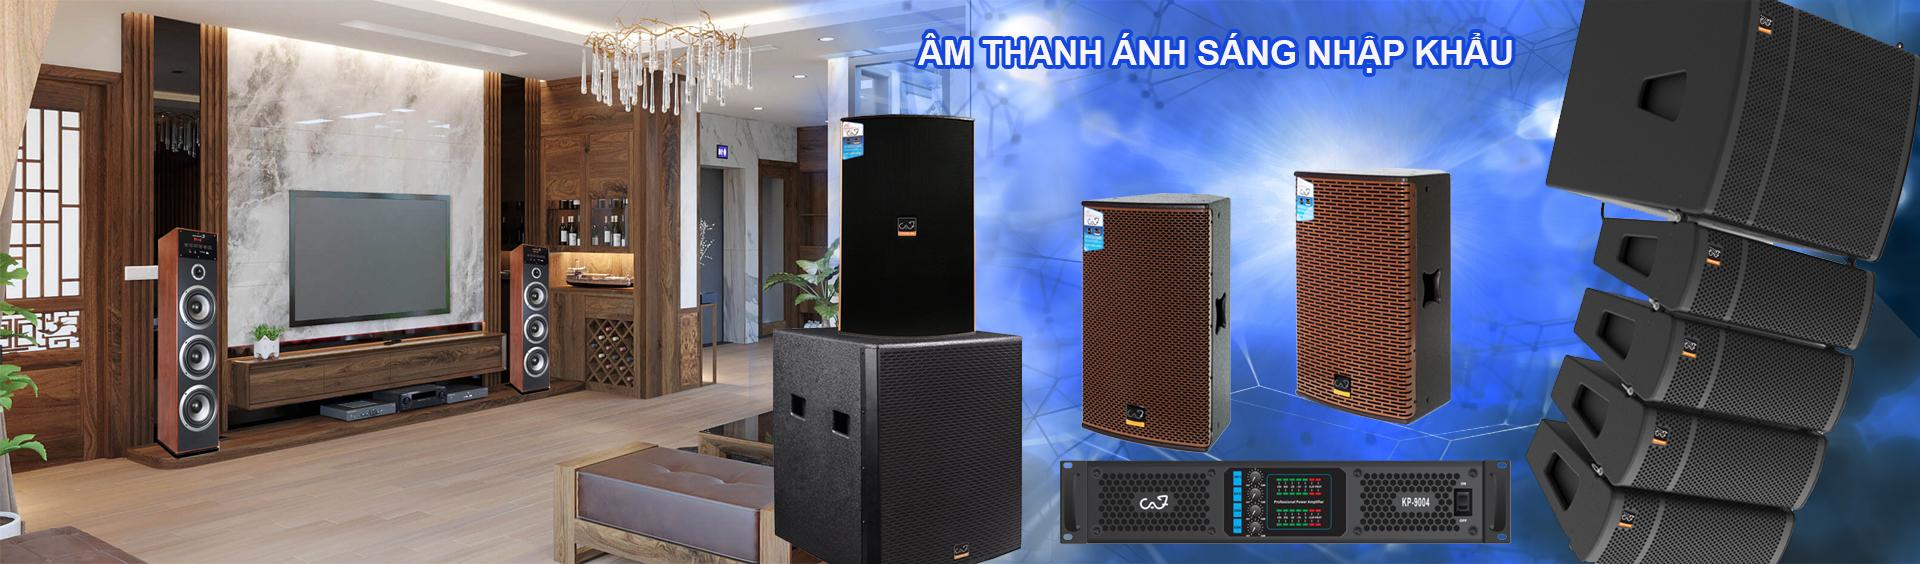 TAN VIET GROUP chuyên cung cấp thiết bị âm thanh nhập khẩu tại Hà Nội